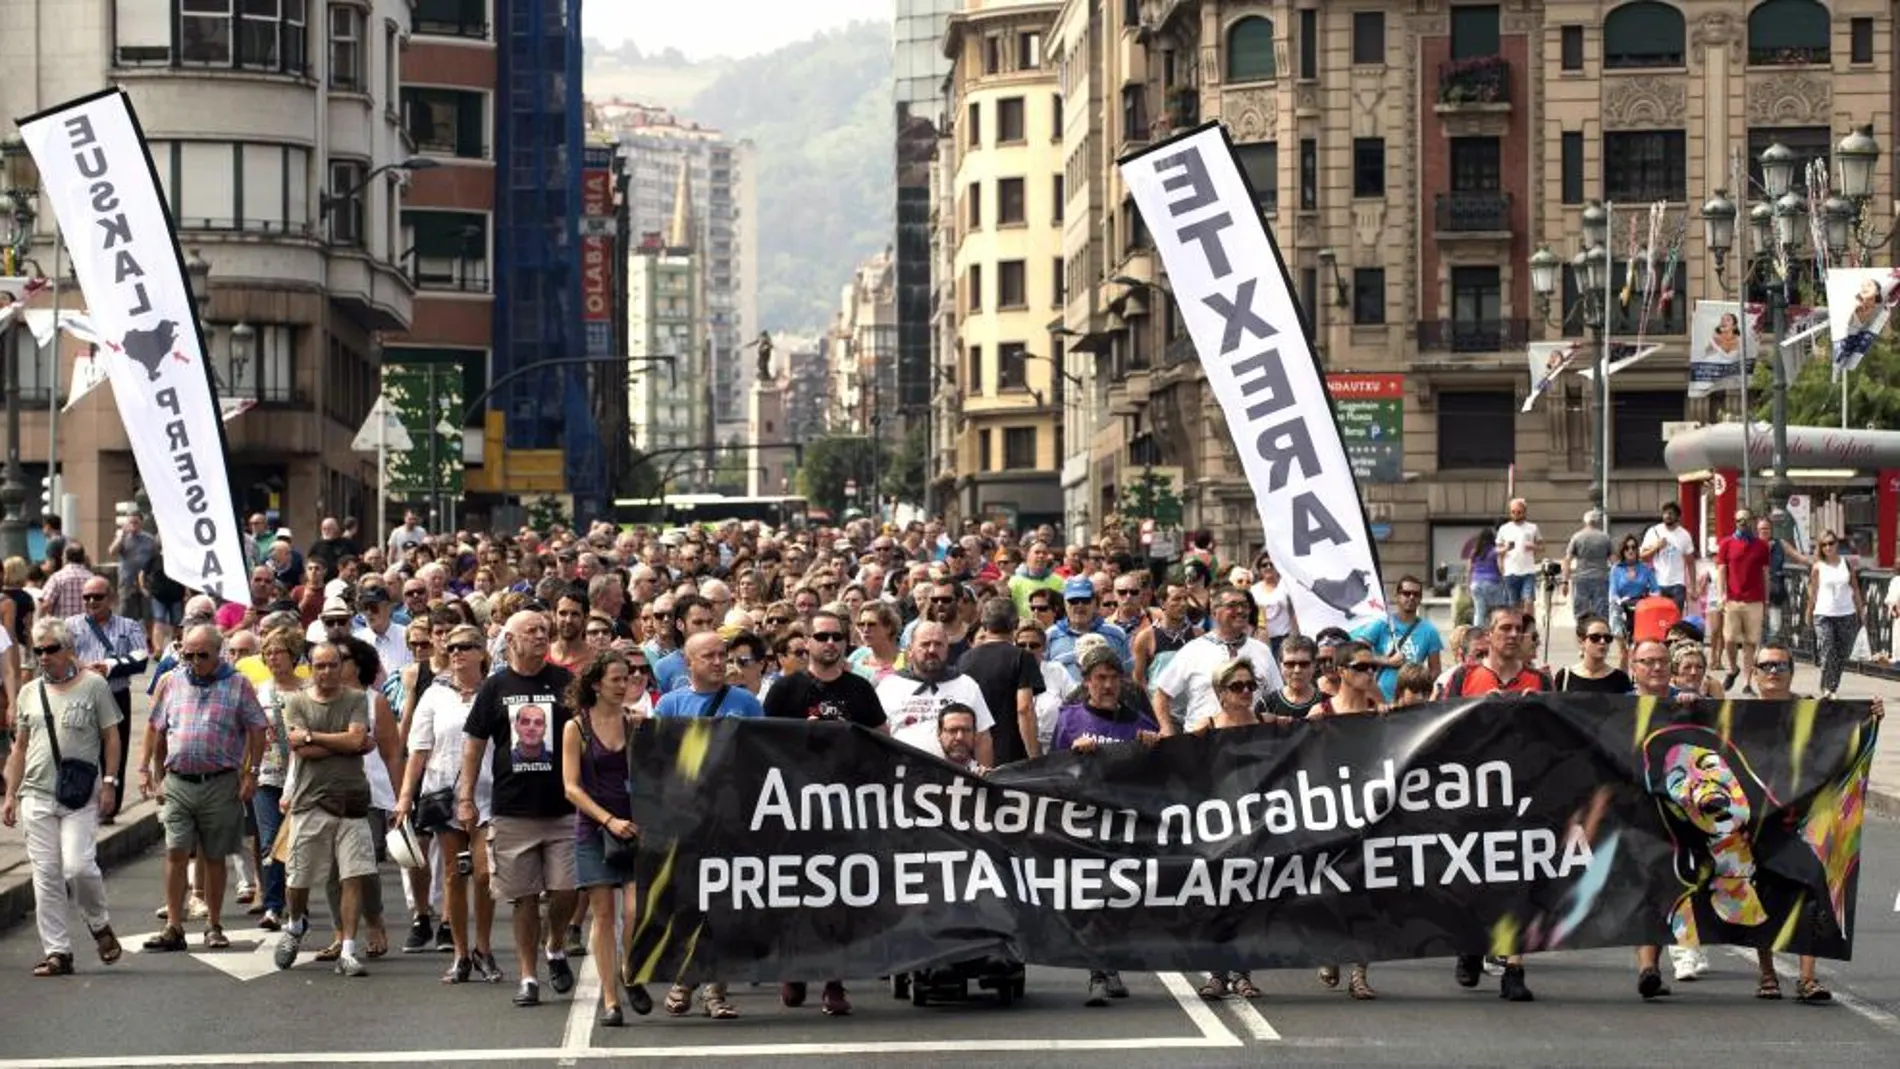 Cabecera de la manifestación en Bilbao